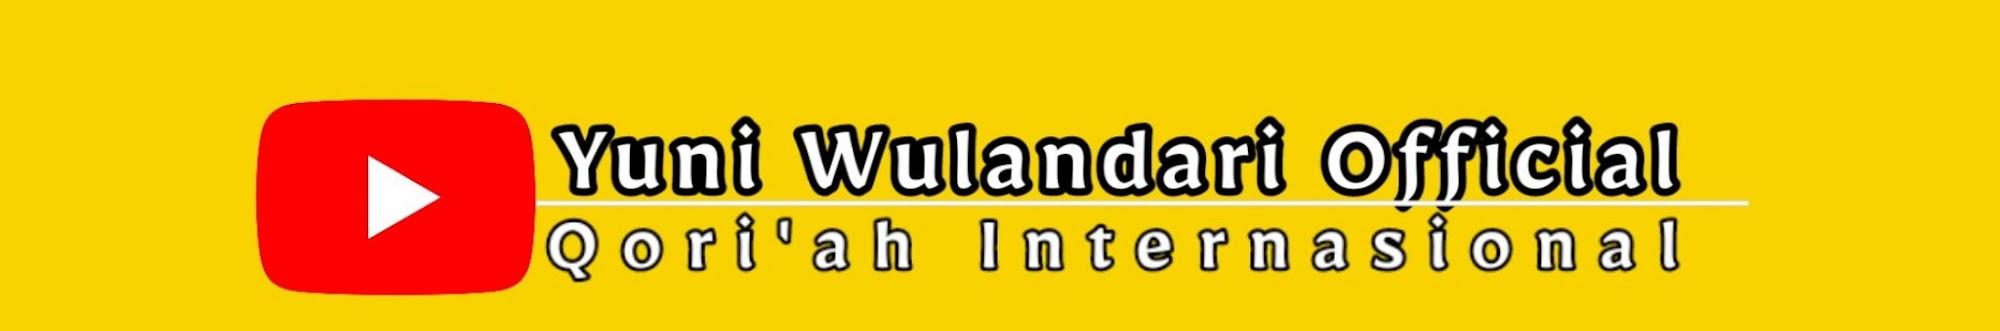 Yuni Wulandari official